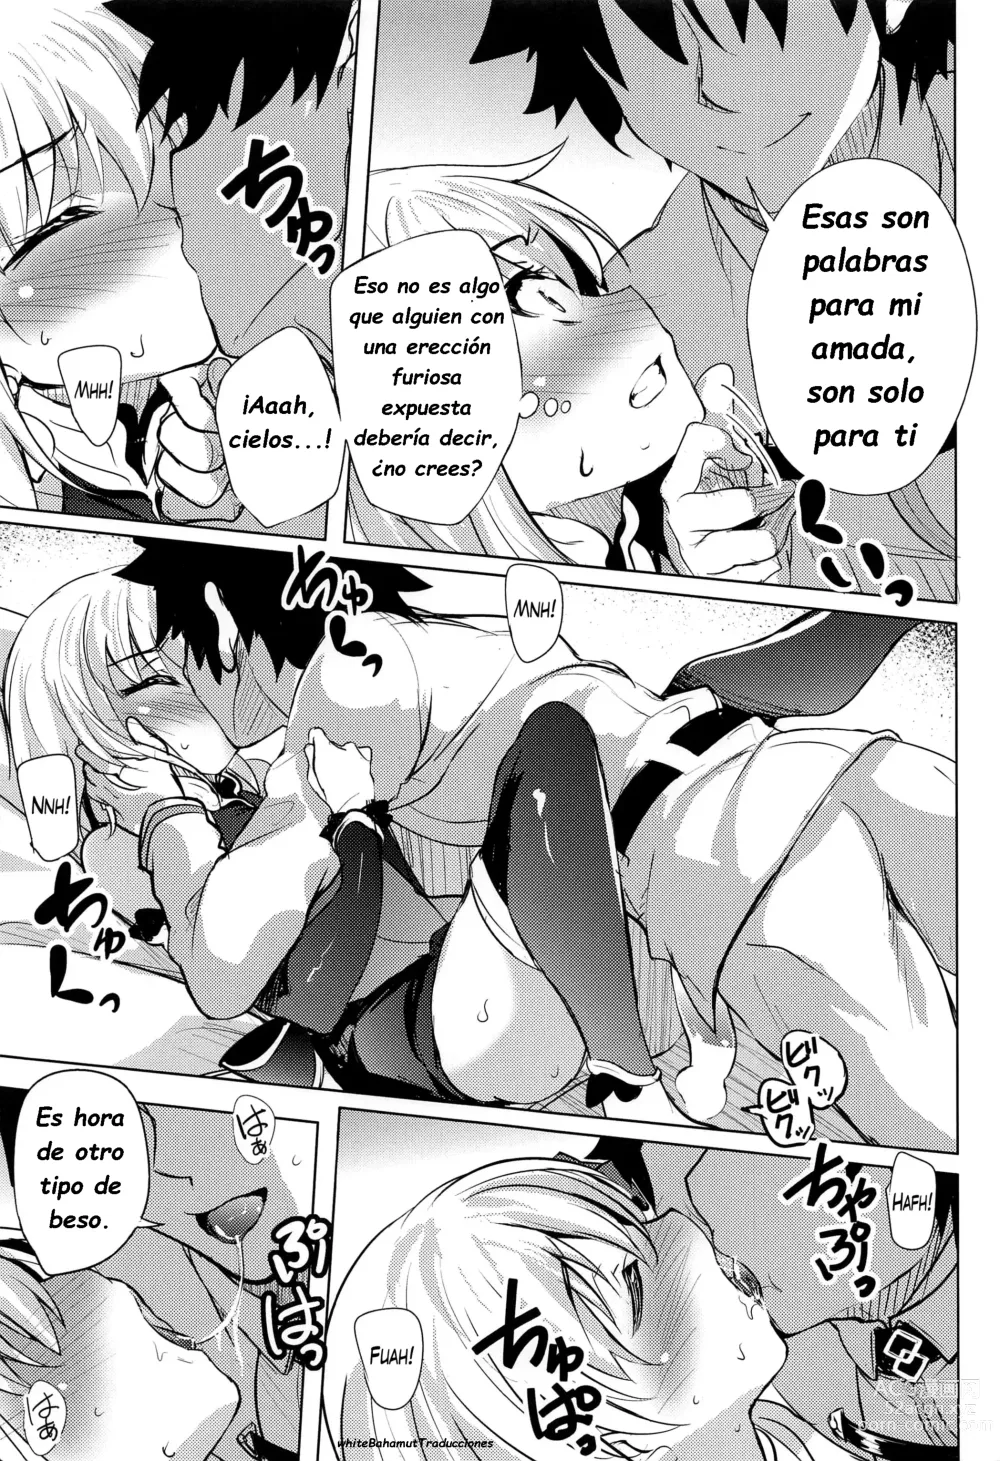 Page 6 of doujinshi Kama quiere que la quieran pero no es sincera al respecto